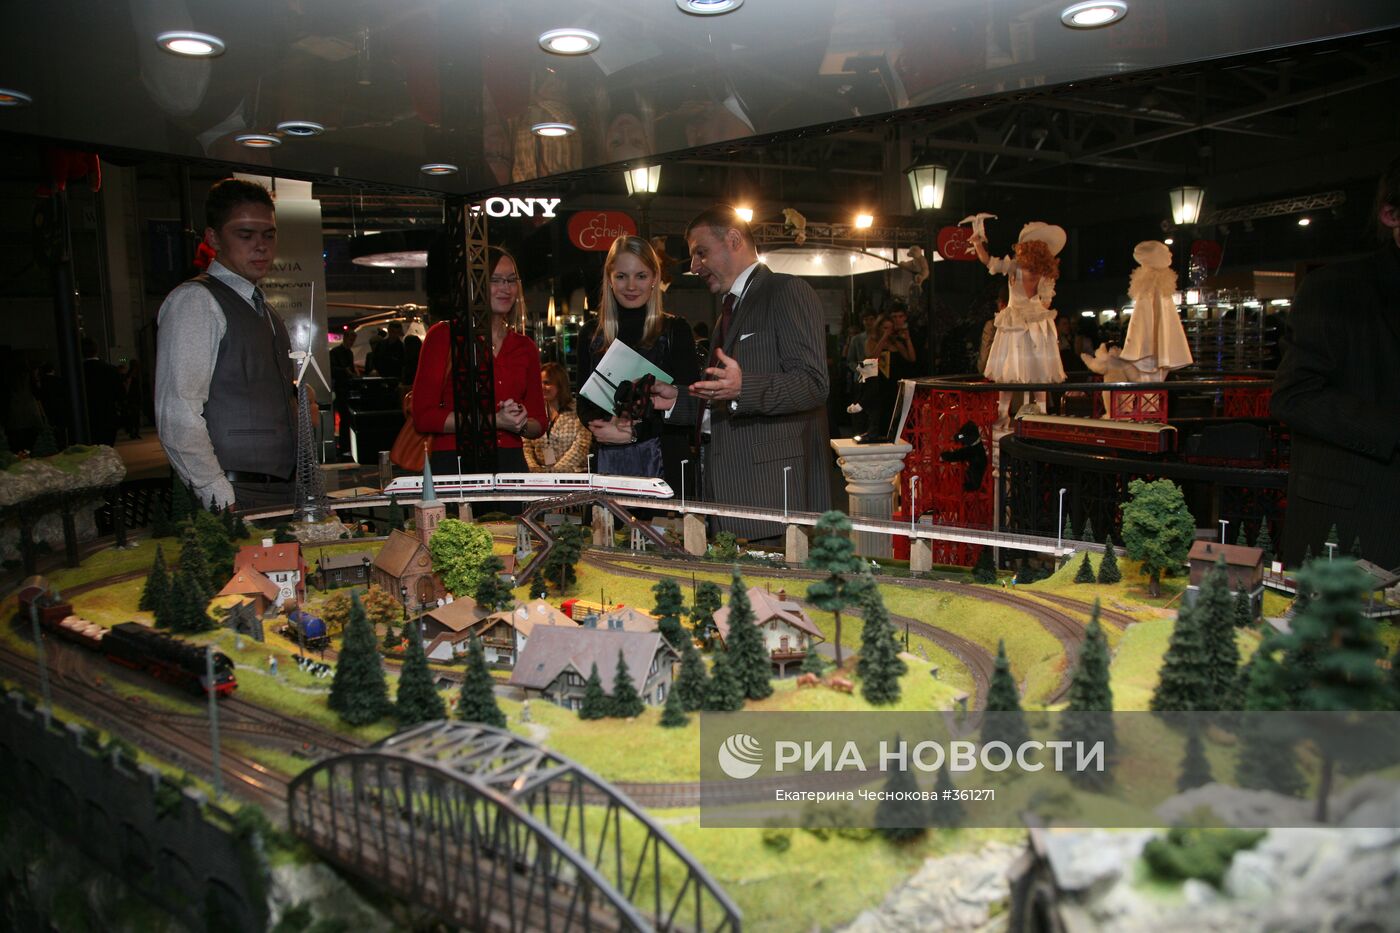 Выставка Millionaire Fair Moscow 2008